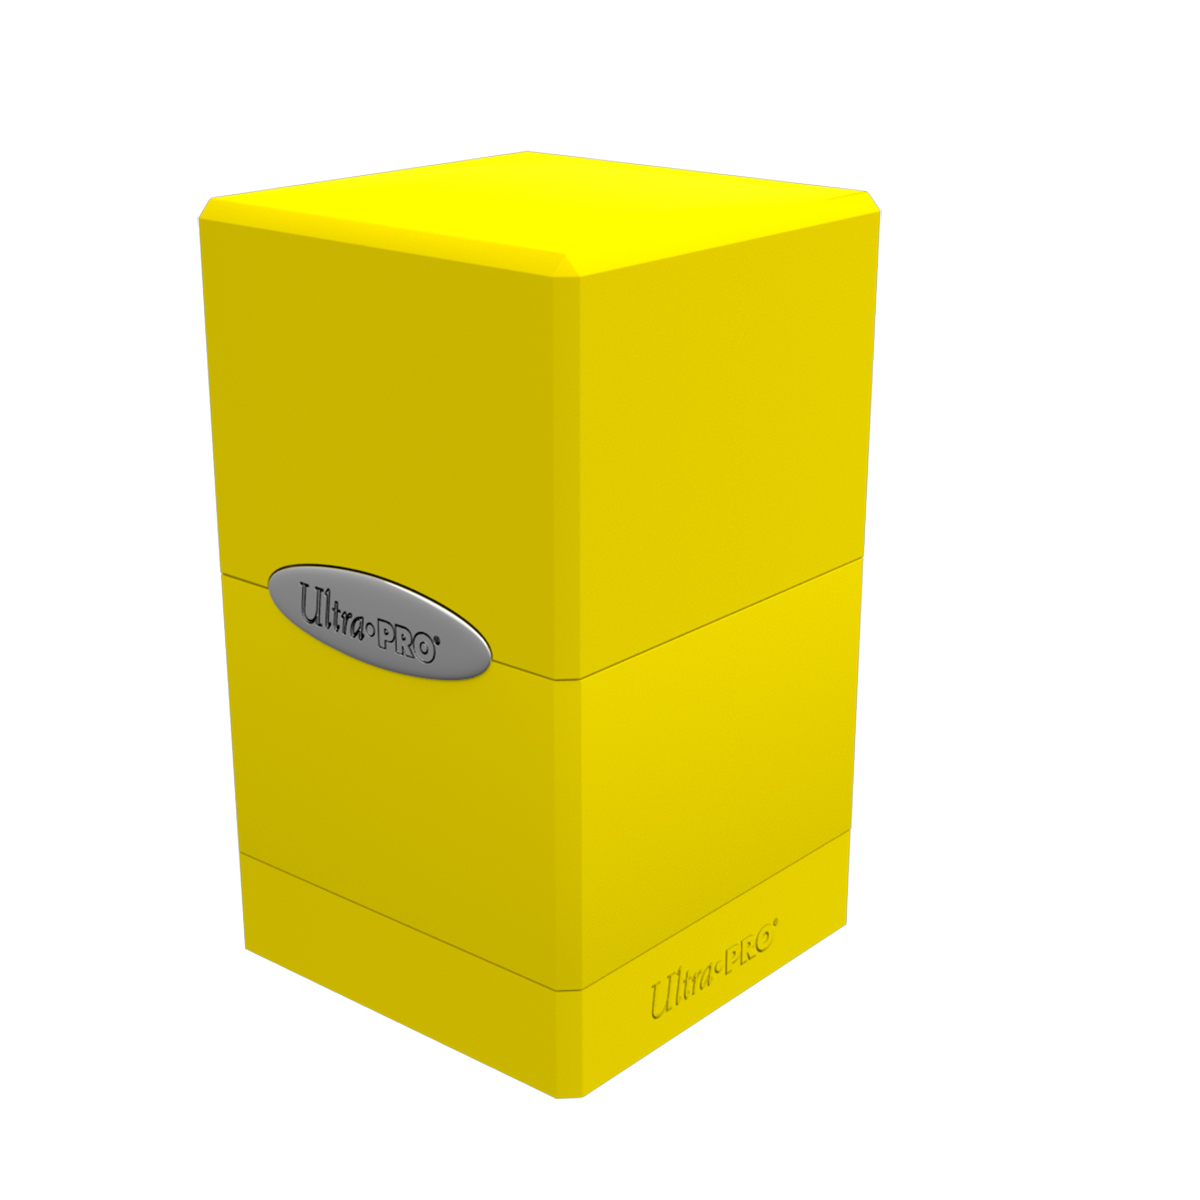 Коробочка Ultra Pro Satin Tower Lemon Yellow для карт MTG, Pokemon коробочка card pro для хранения 3000 карт mtg pokemon картонная чёрная матовая